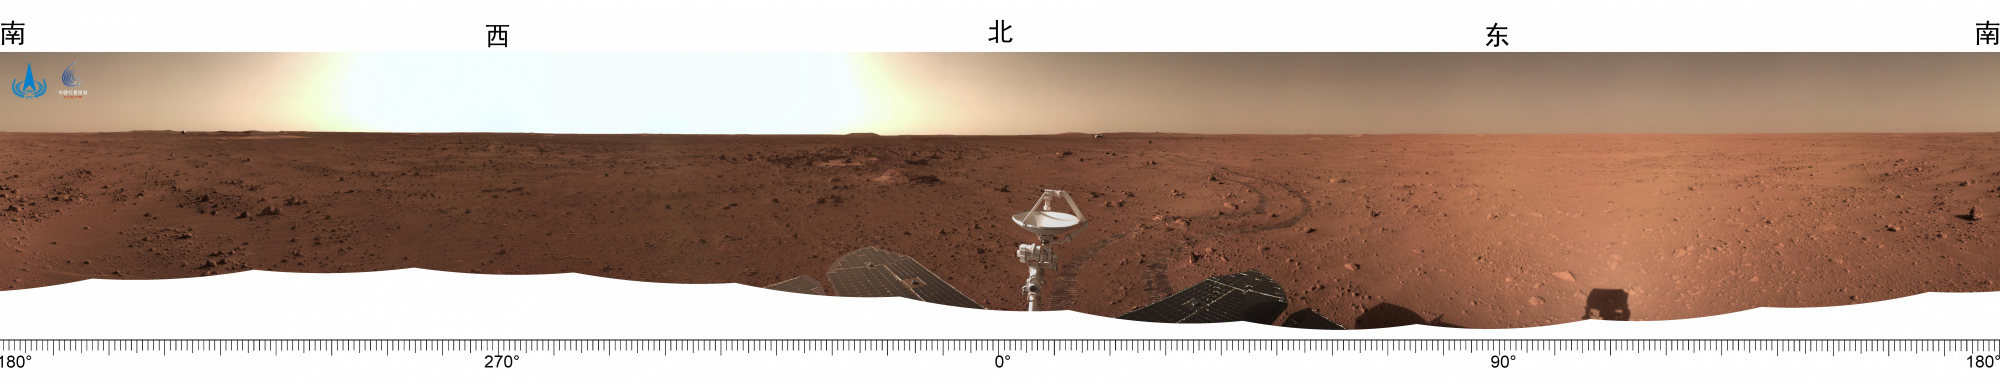 2021.06.27-火星全局环境感知图.jpg